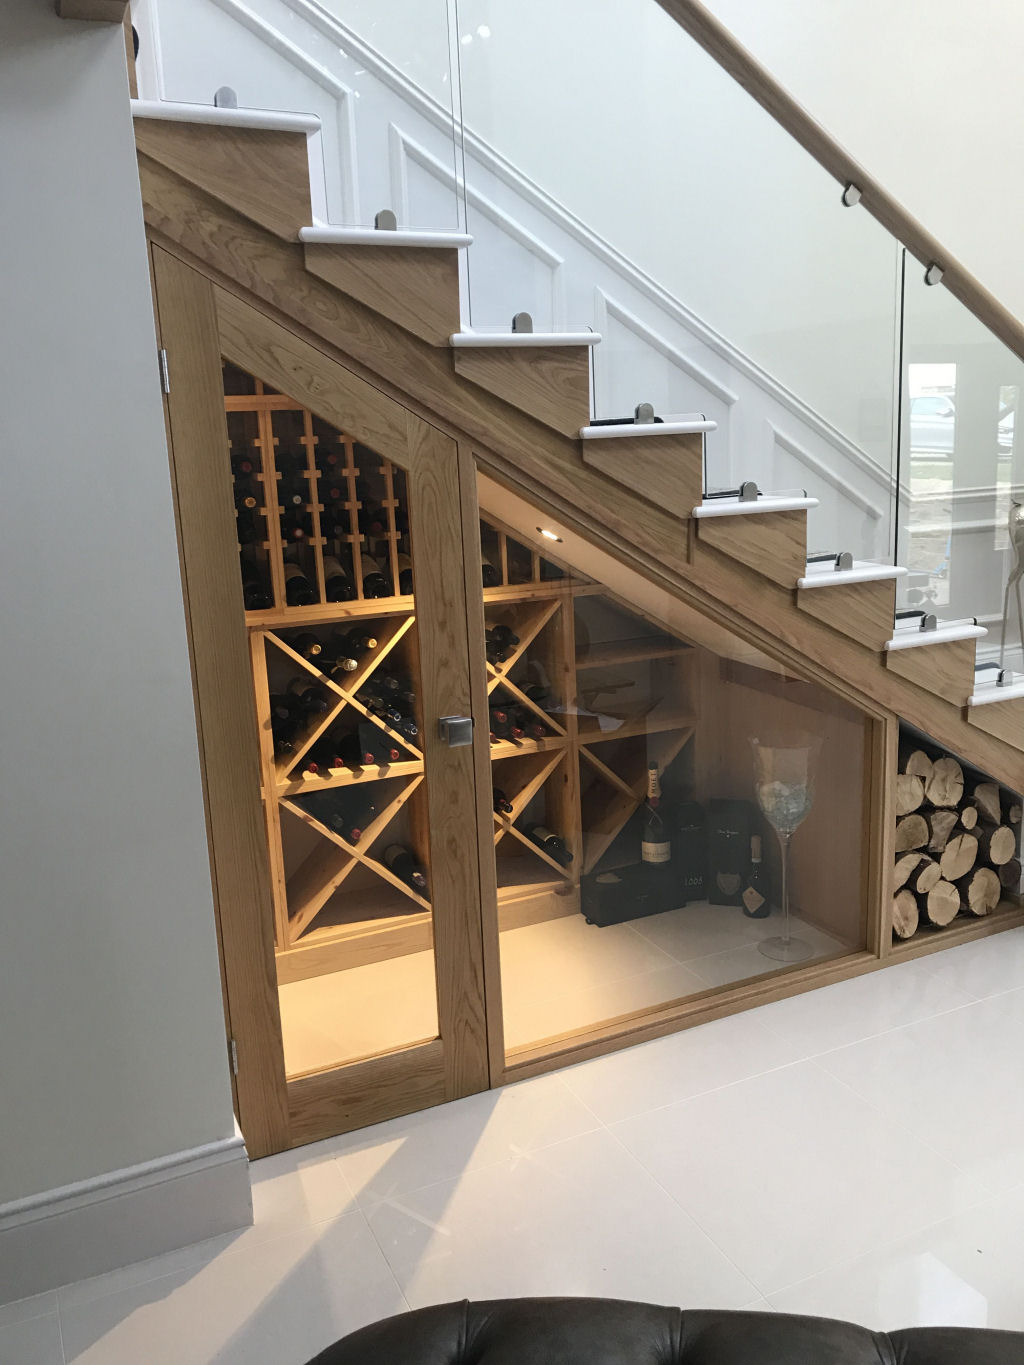 Adega em casa: escadas com espao para garrafas de vinho 10